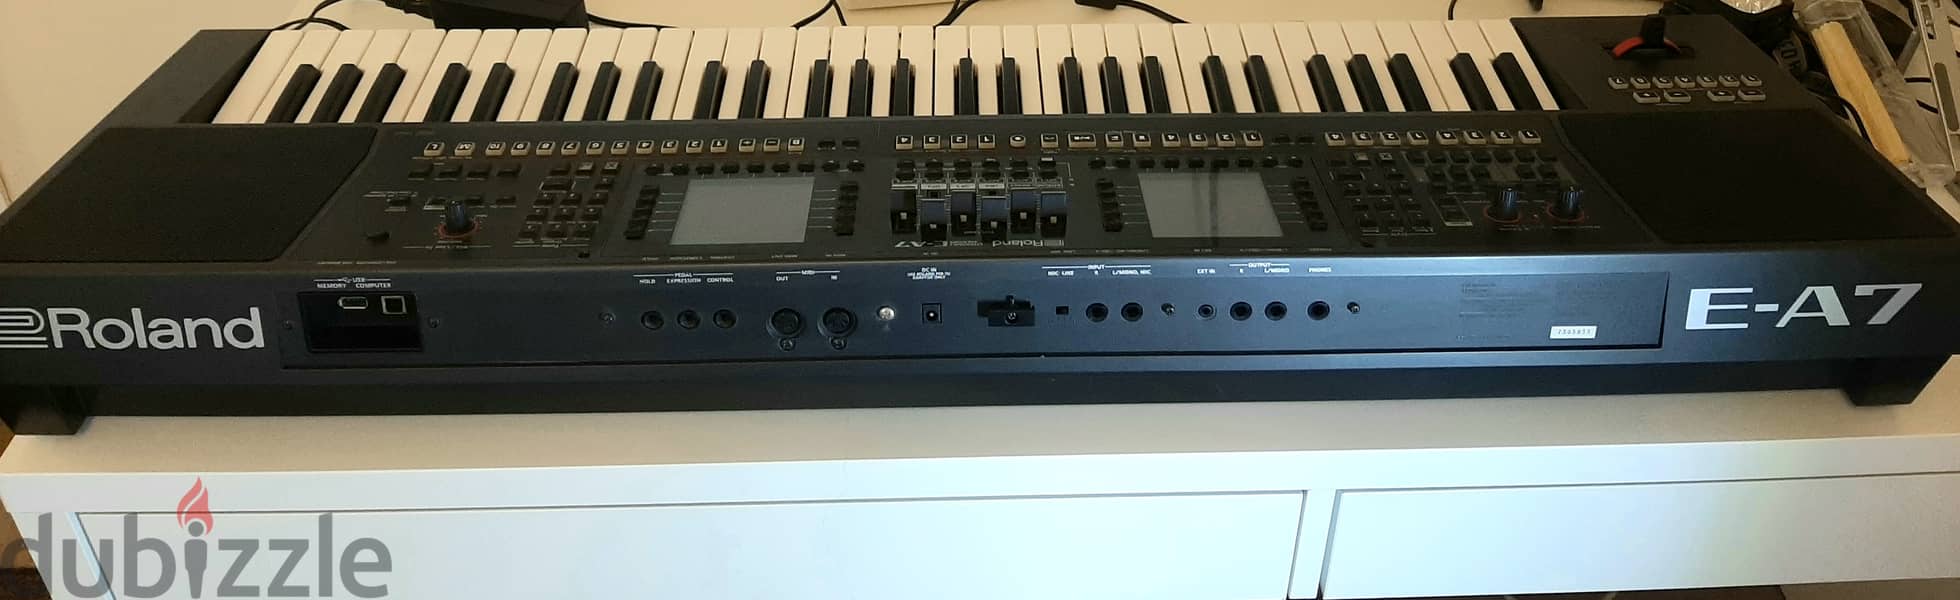 Roland E-A7 expandable arranger 9